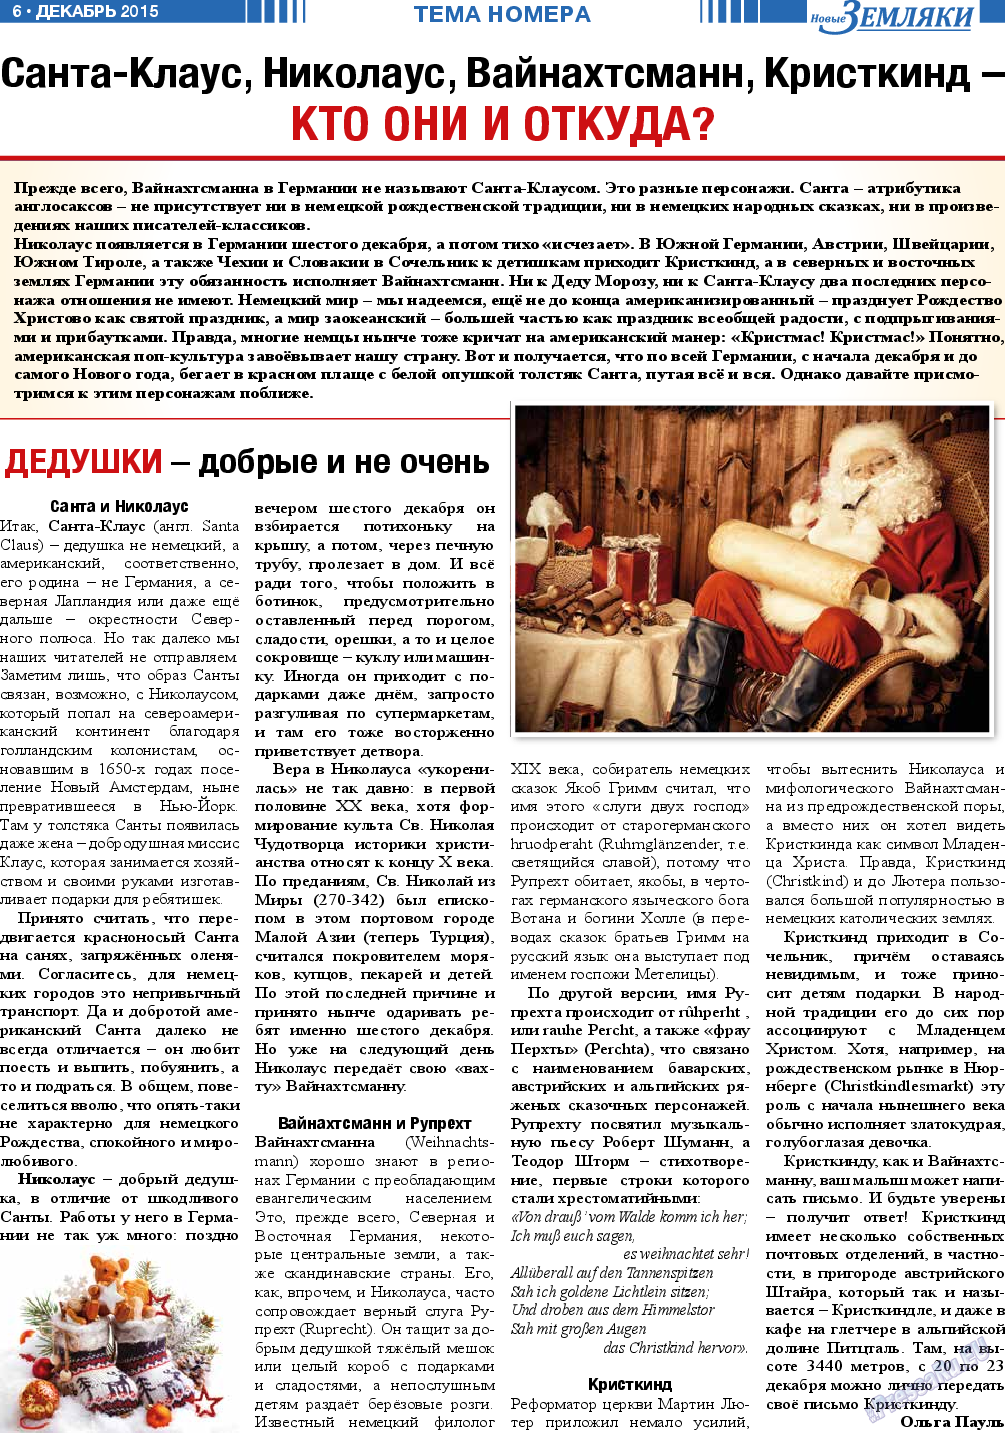 Новые Земляки, газета. 2015 №12 стр.6